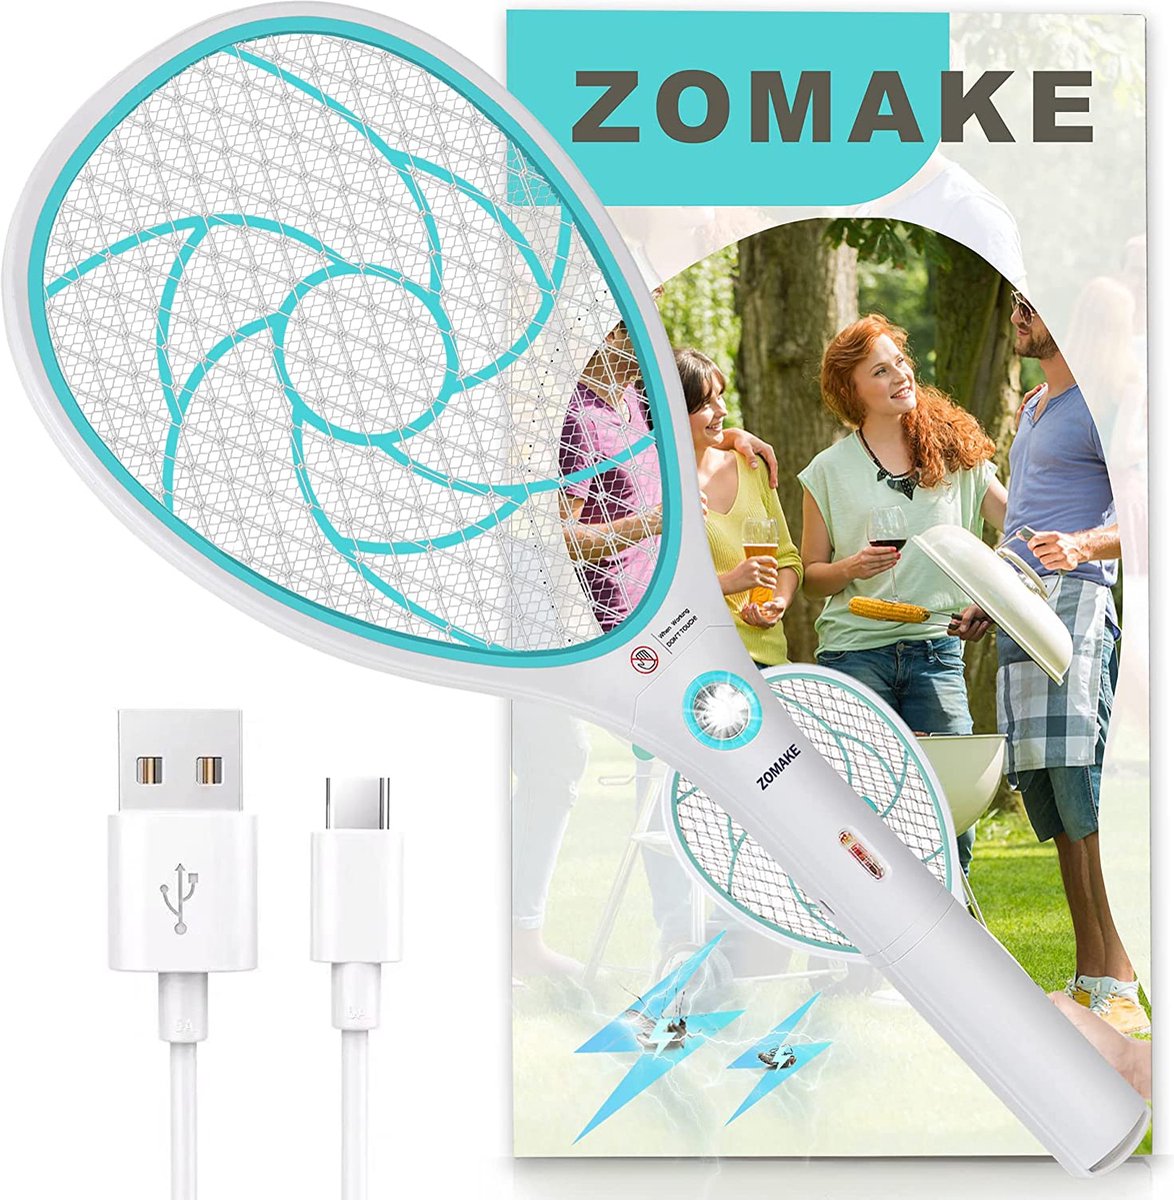 ZOMAKE Elektrische vliegenmepper, oplaadbaar via USB, elektrisch, extra sterk, voor buiten en binnen, elektrische vliegenvanger voor muggen en insecten, blauw